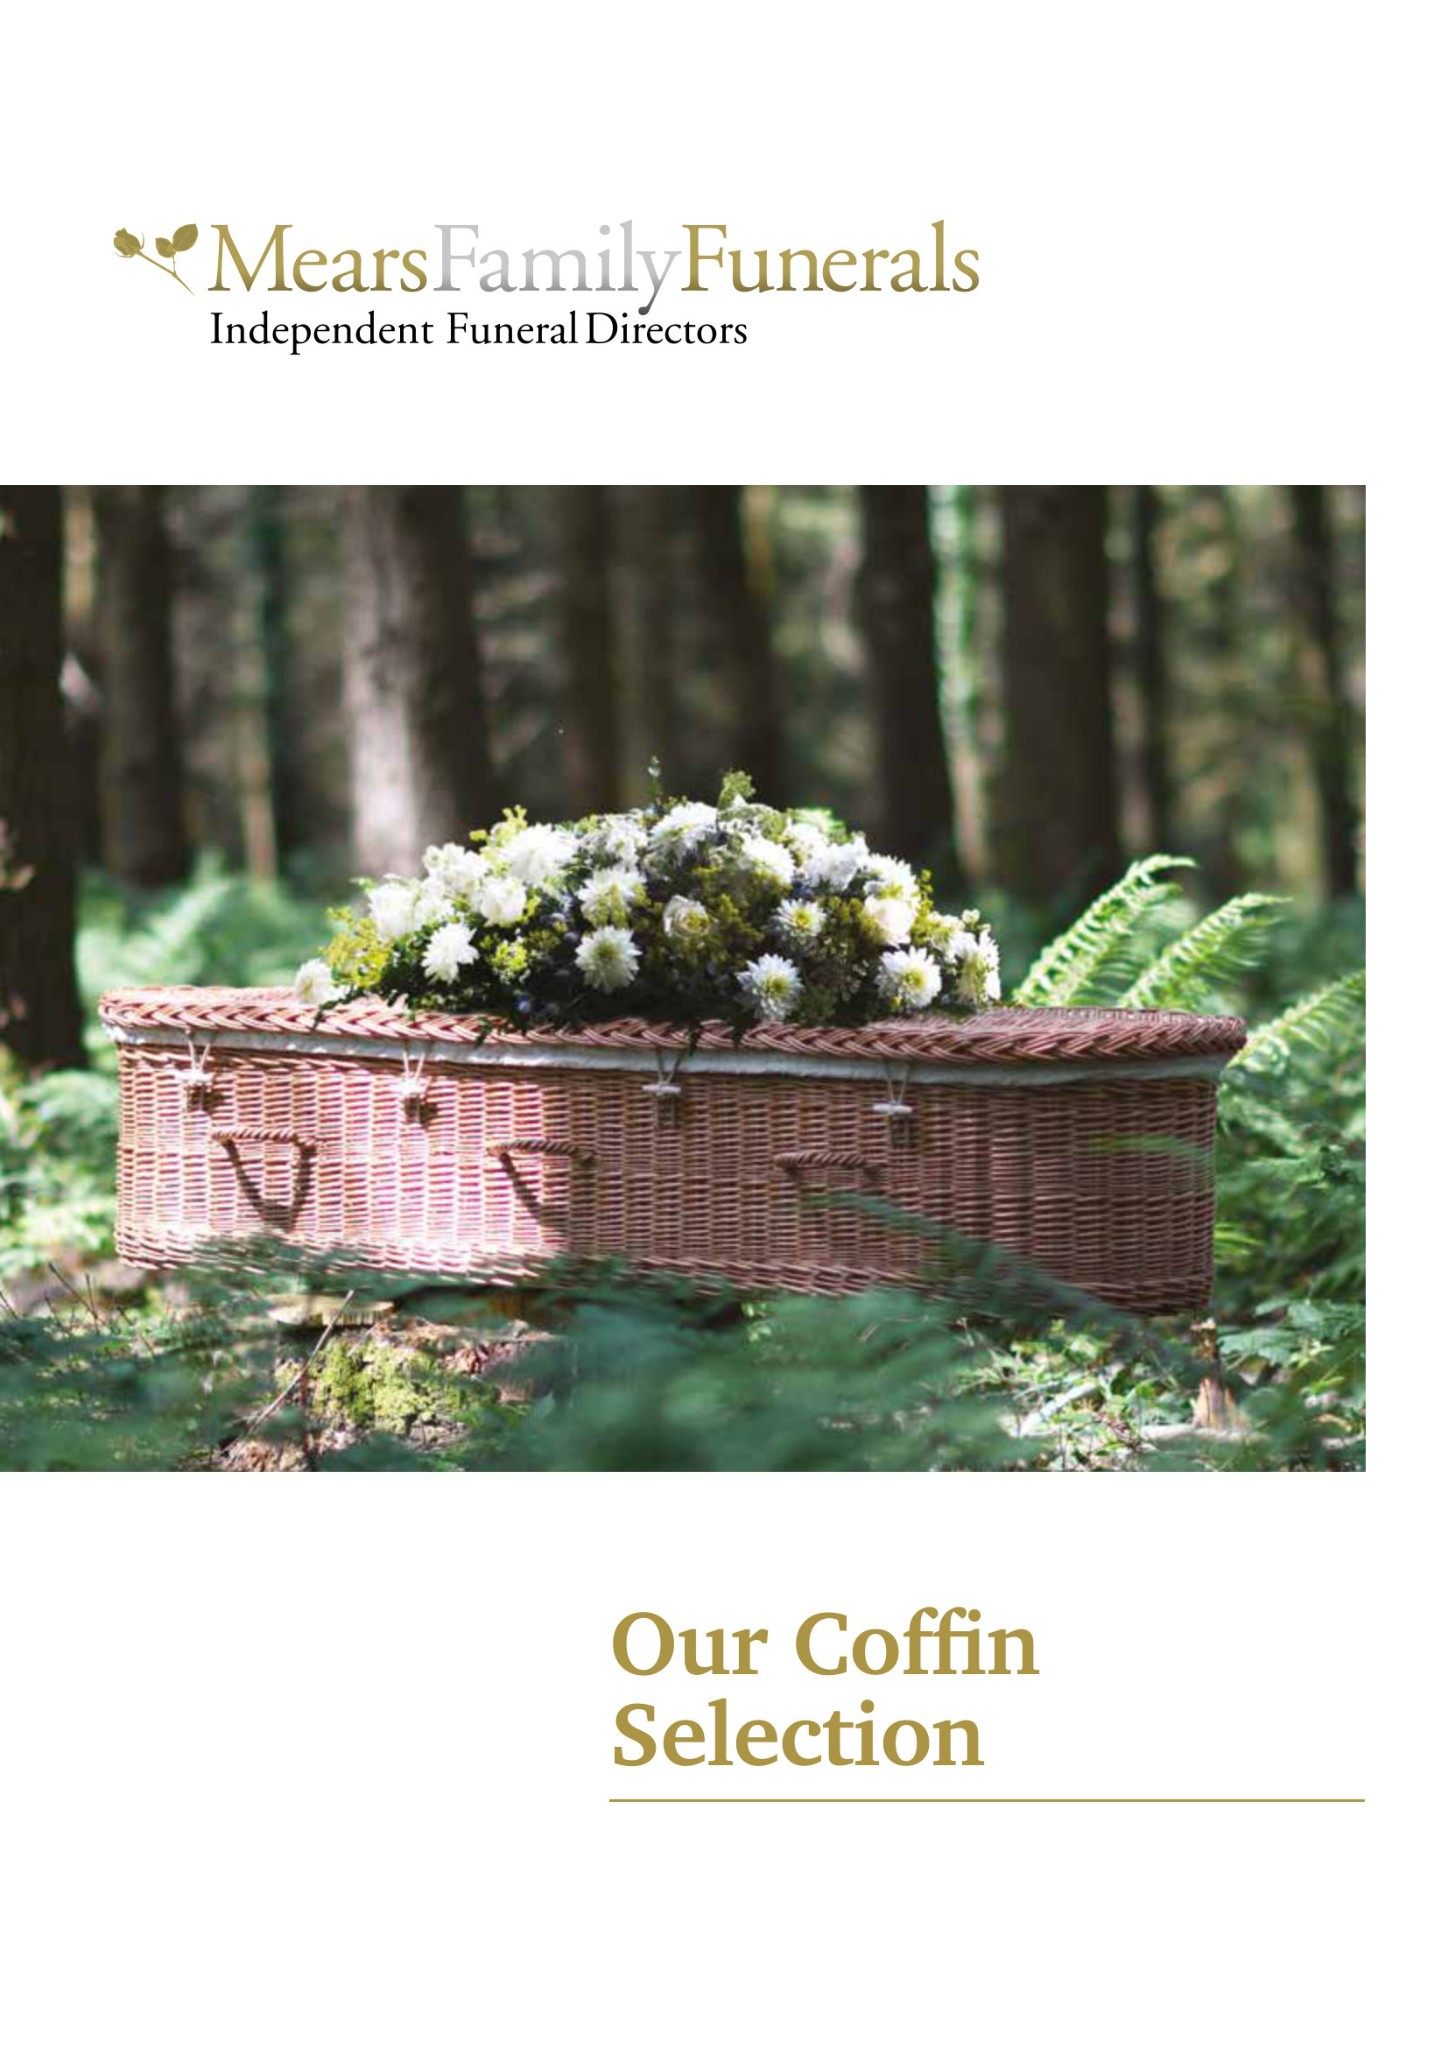 mff-coffins-brochure-01